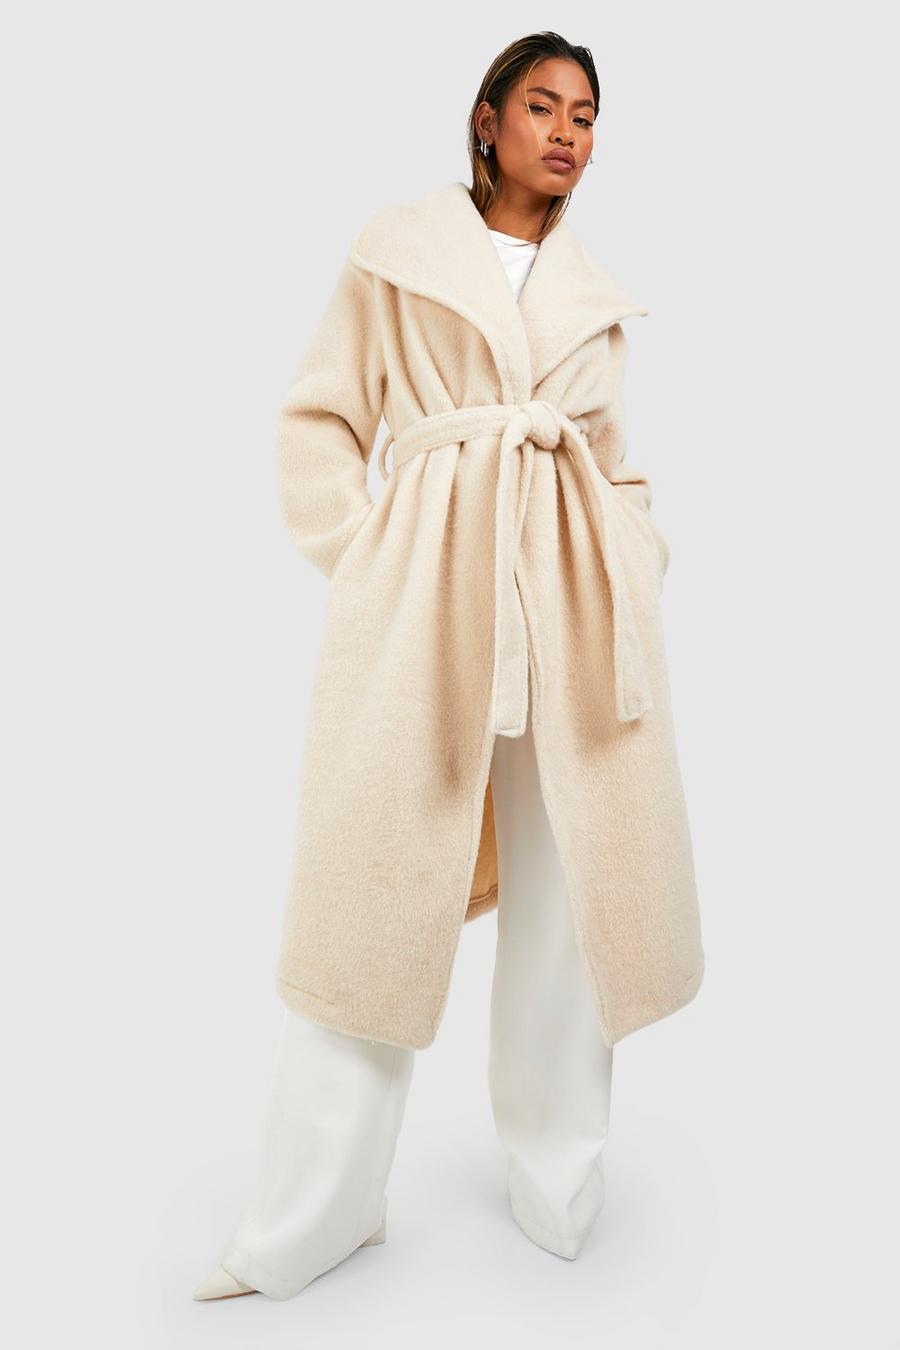 Cappotto maxi effetto lana con trama, colletto sciallato e cintura, Cream image number 1